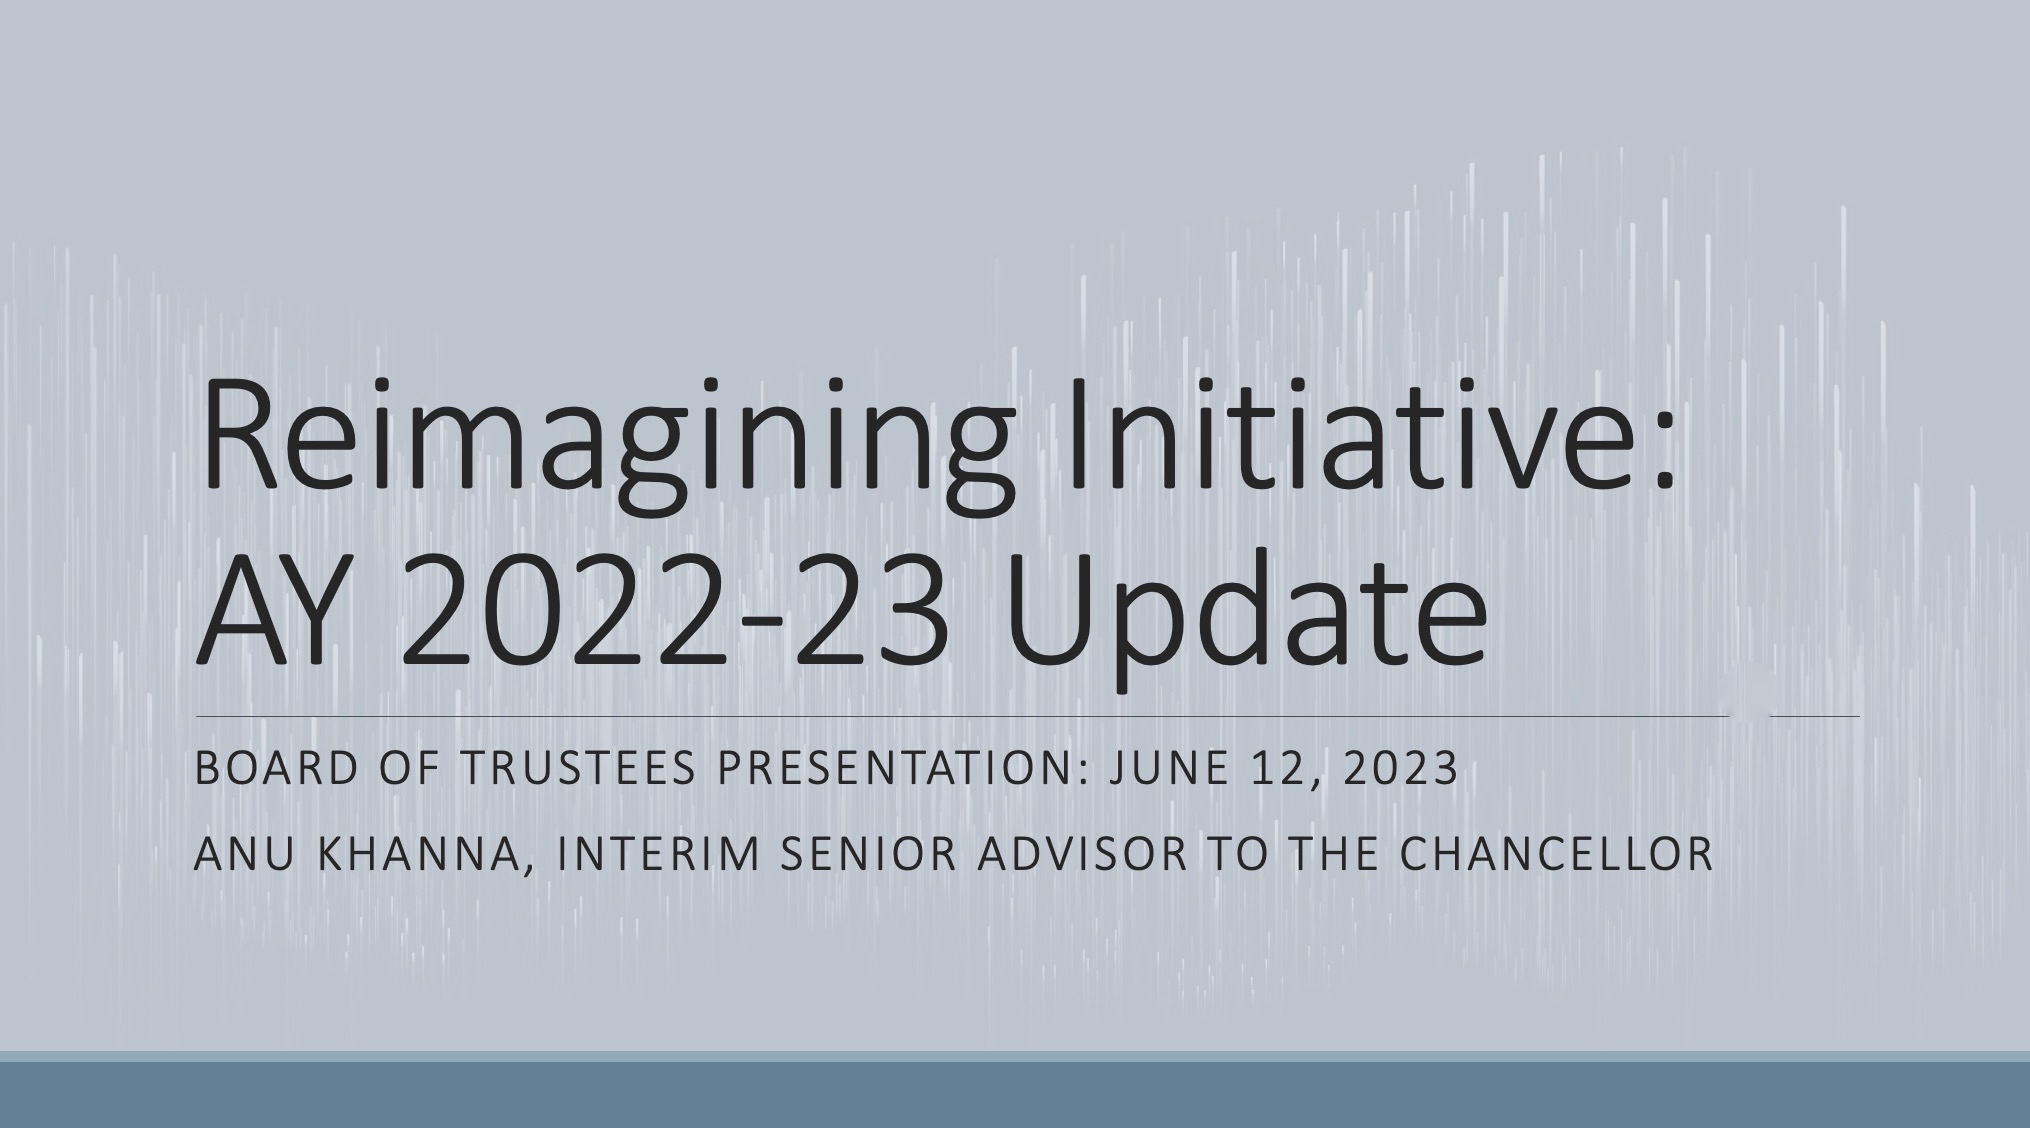 Reimagining initiative 6-12-23 presentation image 